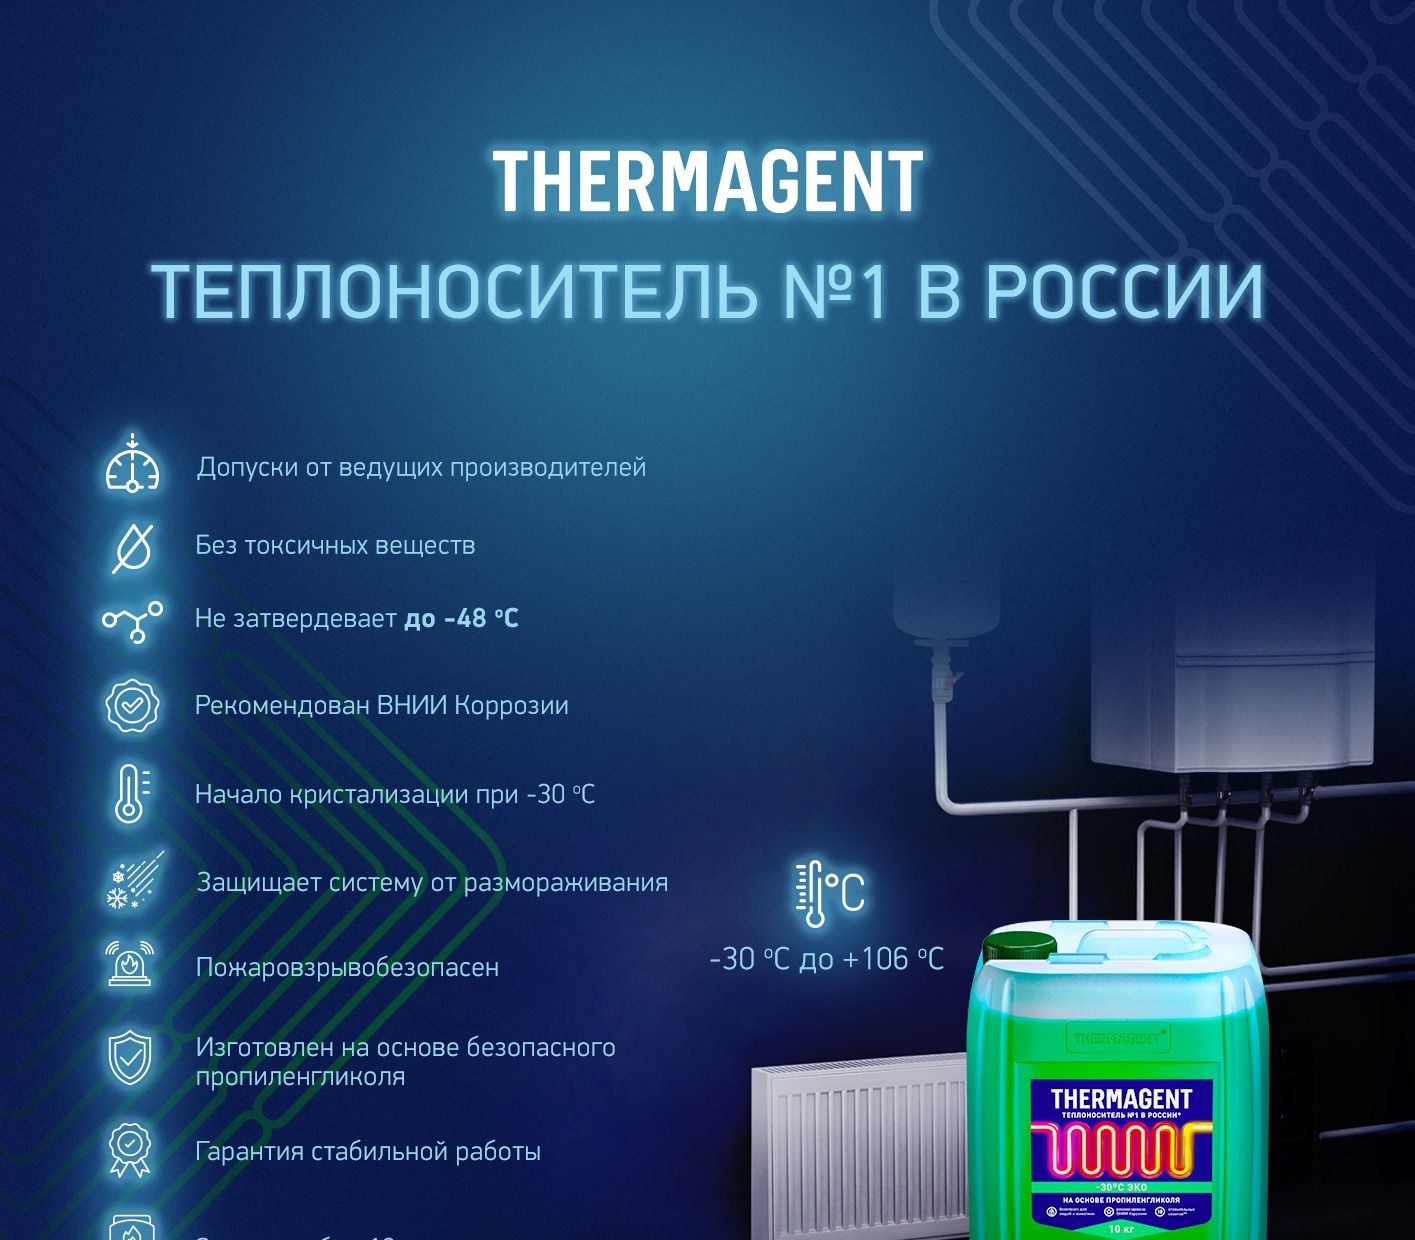  Thermagent ЭKO -30 на основе пропиленгликоля 10 кг .